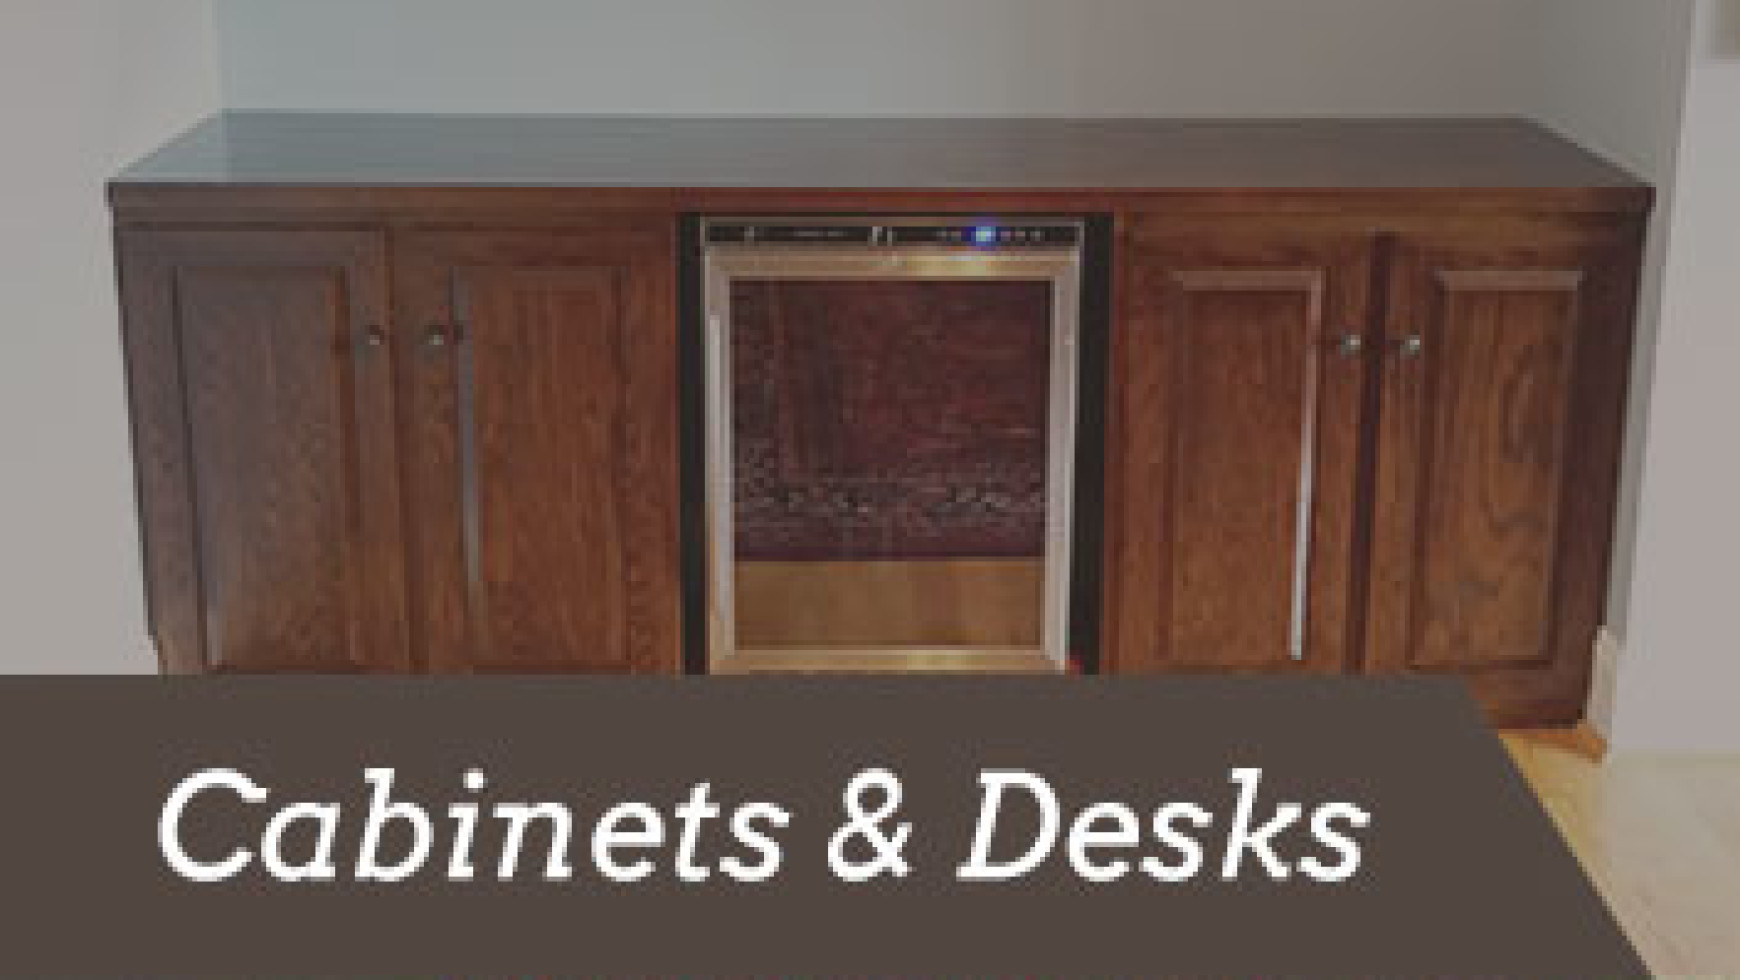 Cabinets & Desks